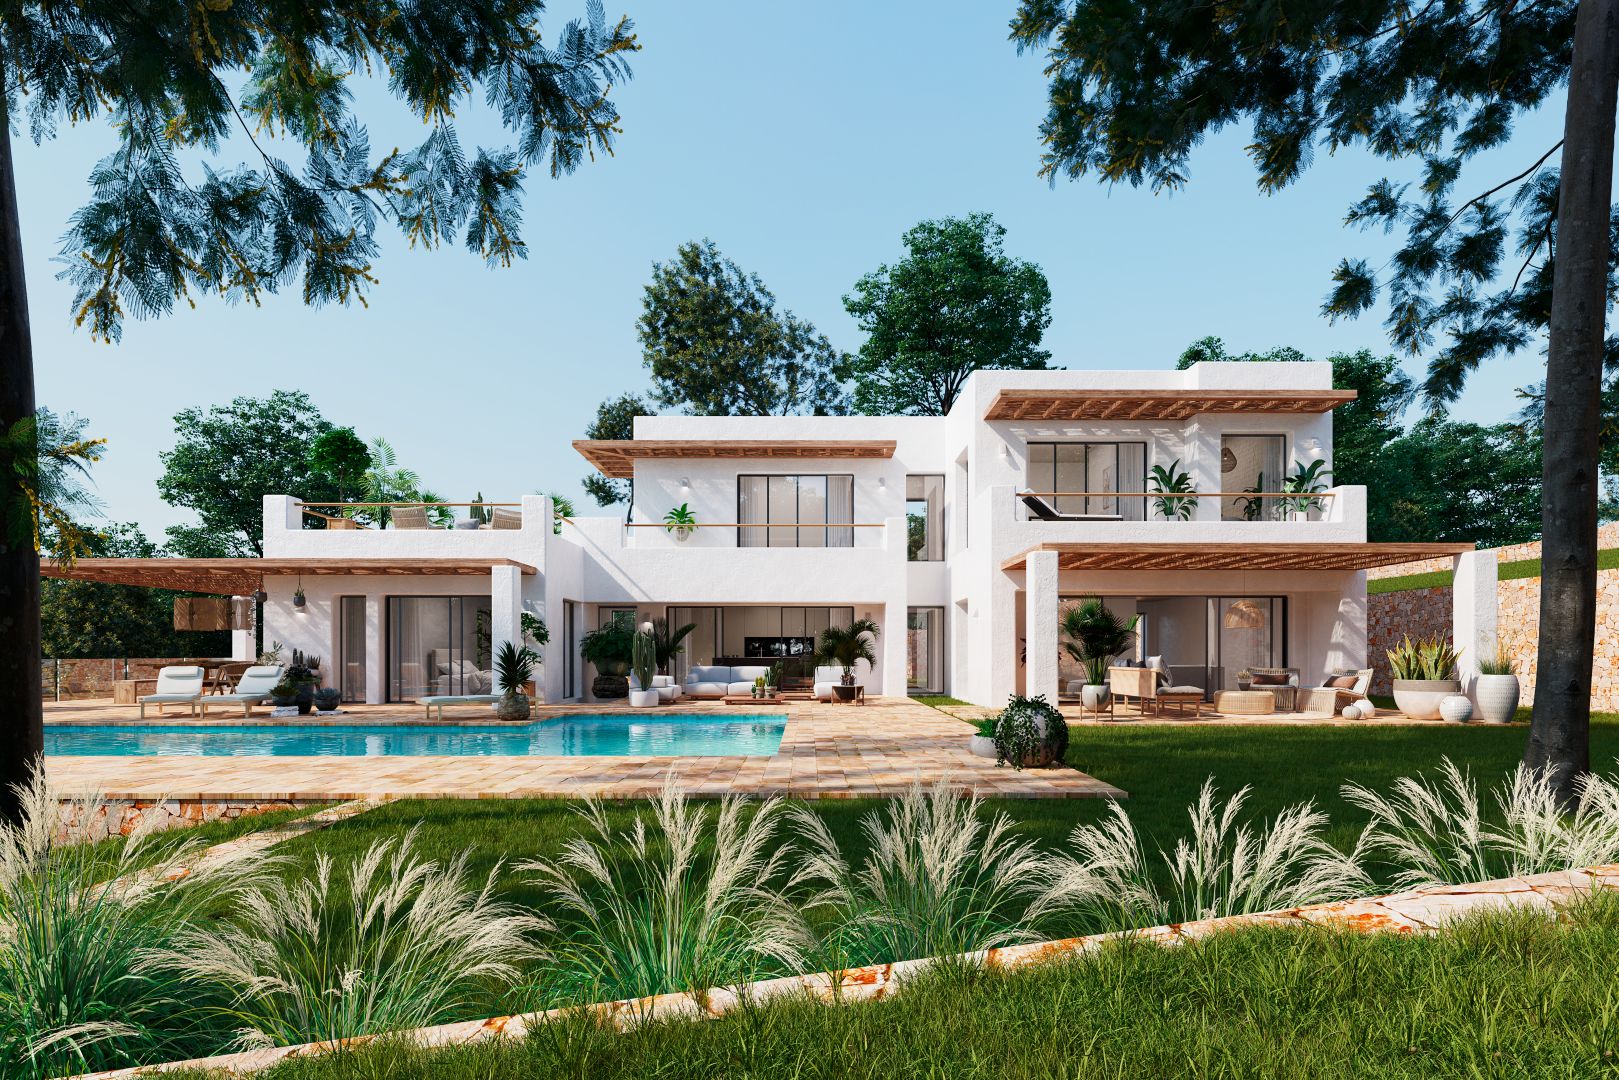 Luxuriöses Wohnen enthüllt: Opulente mediterrane Villa mit spektakulärer Aussicht